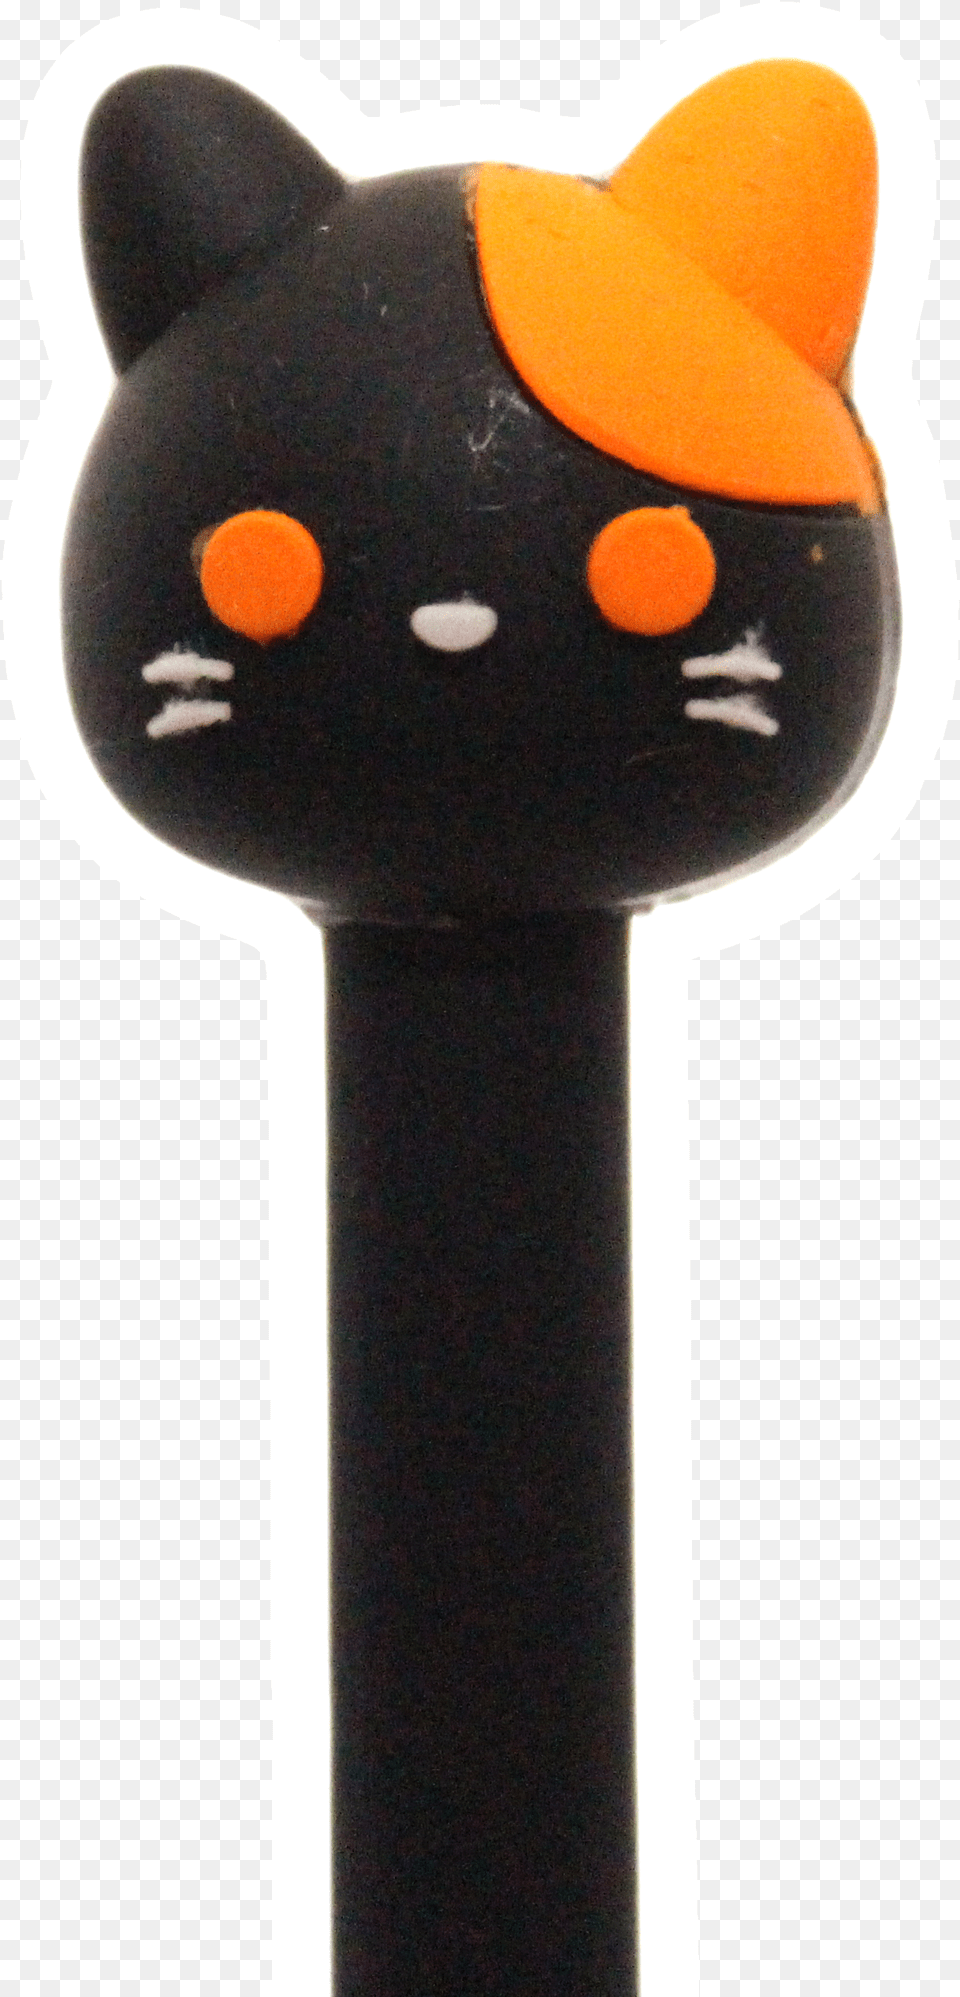 Cute Cat Paw Cat Face Gel Penspens Black Cat, Pez Dispenser Free Png Download